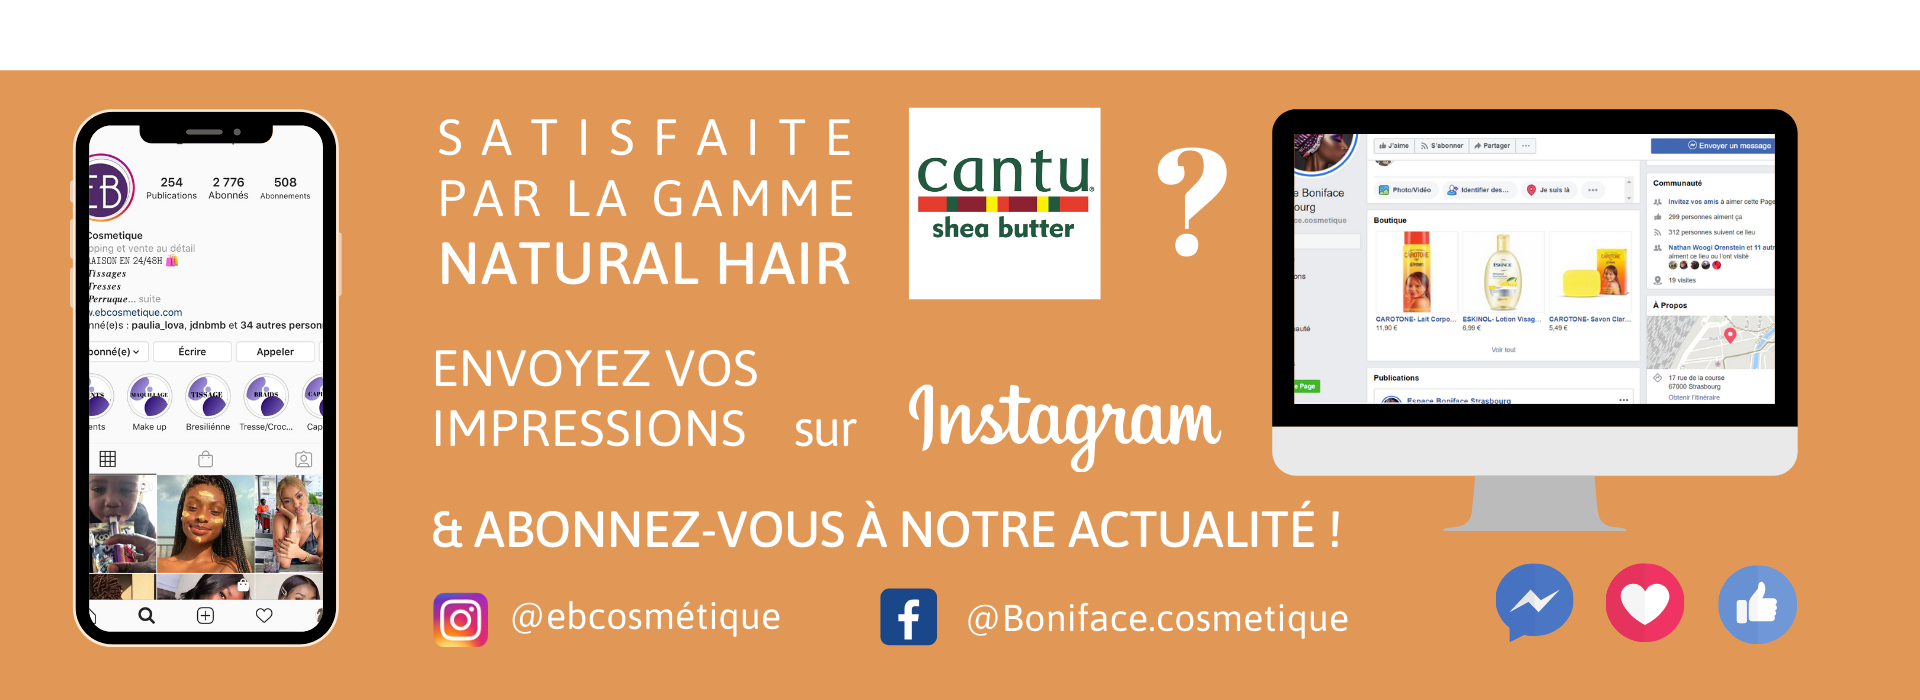 fiche produit ebcosmetique cantu shea butter natural hair coconut curling cream routine capillaire afro bouclé facebook instagram